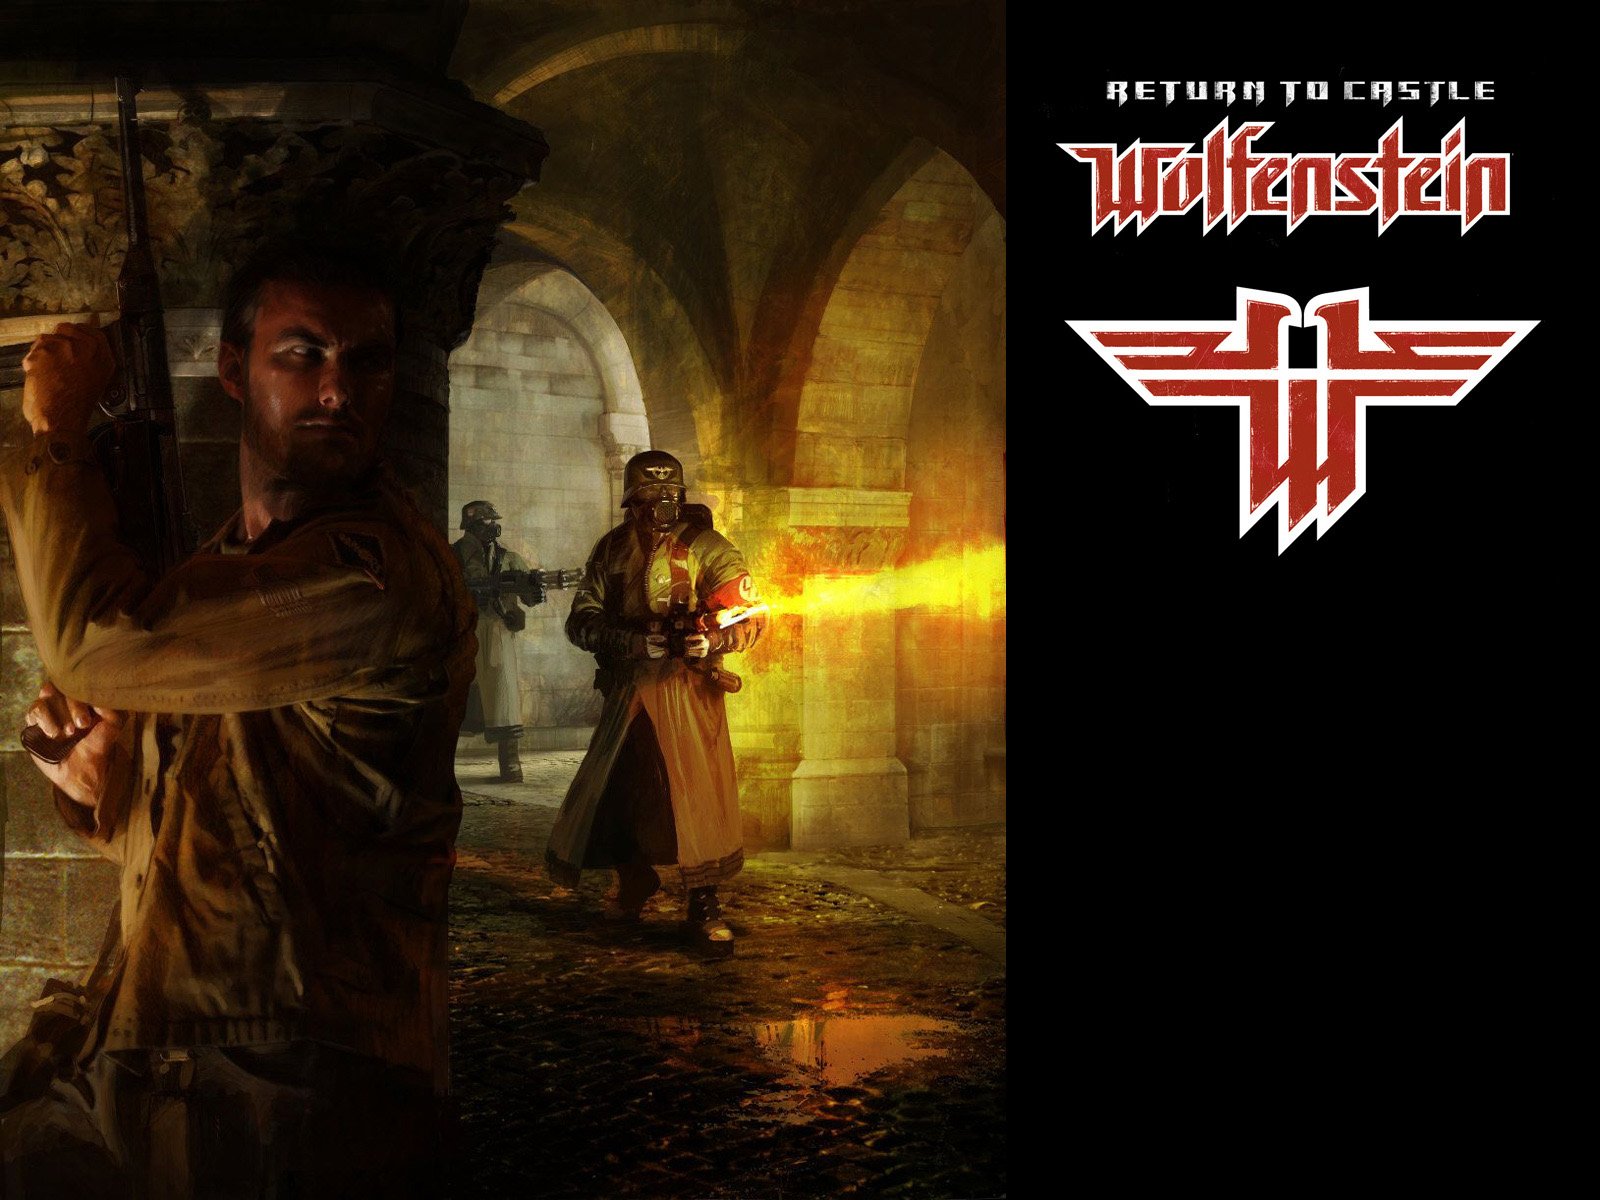 Download Return to Castle Wolfenstein Wallpaper High Resolution HD